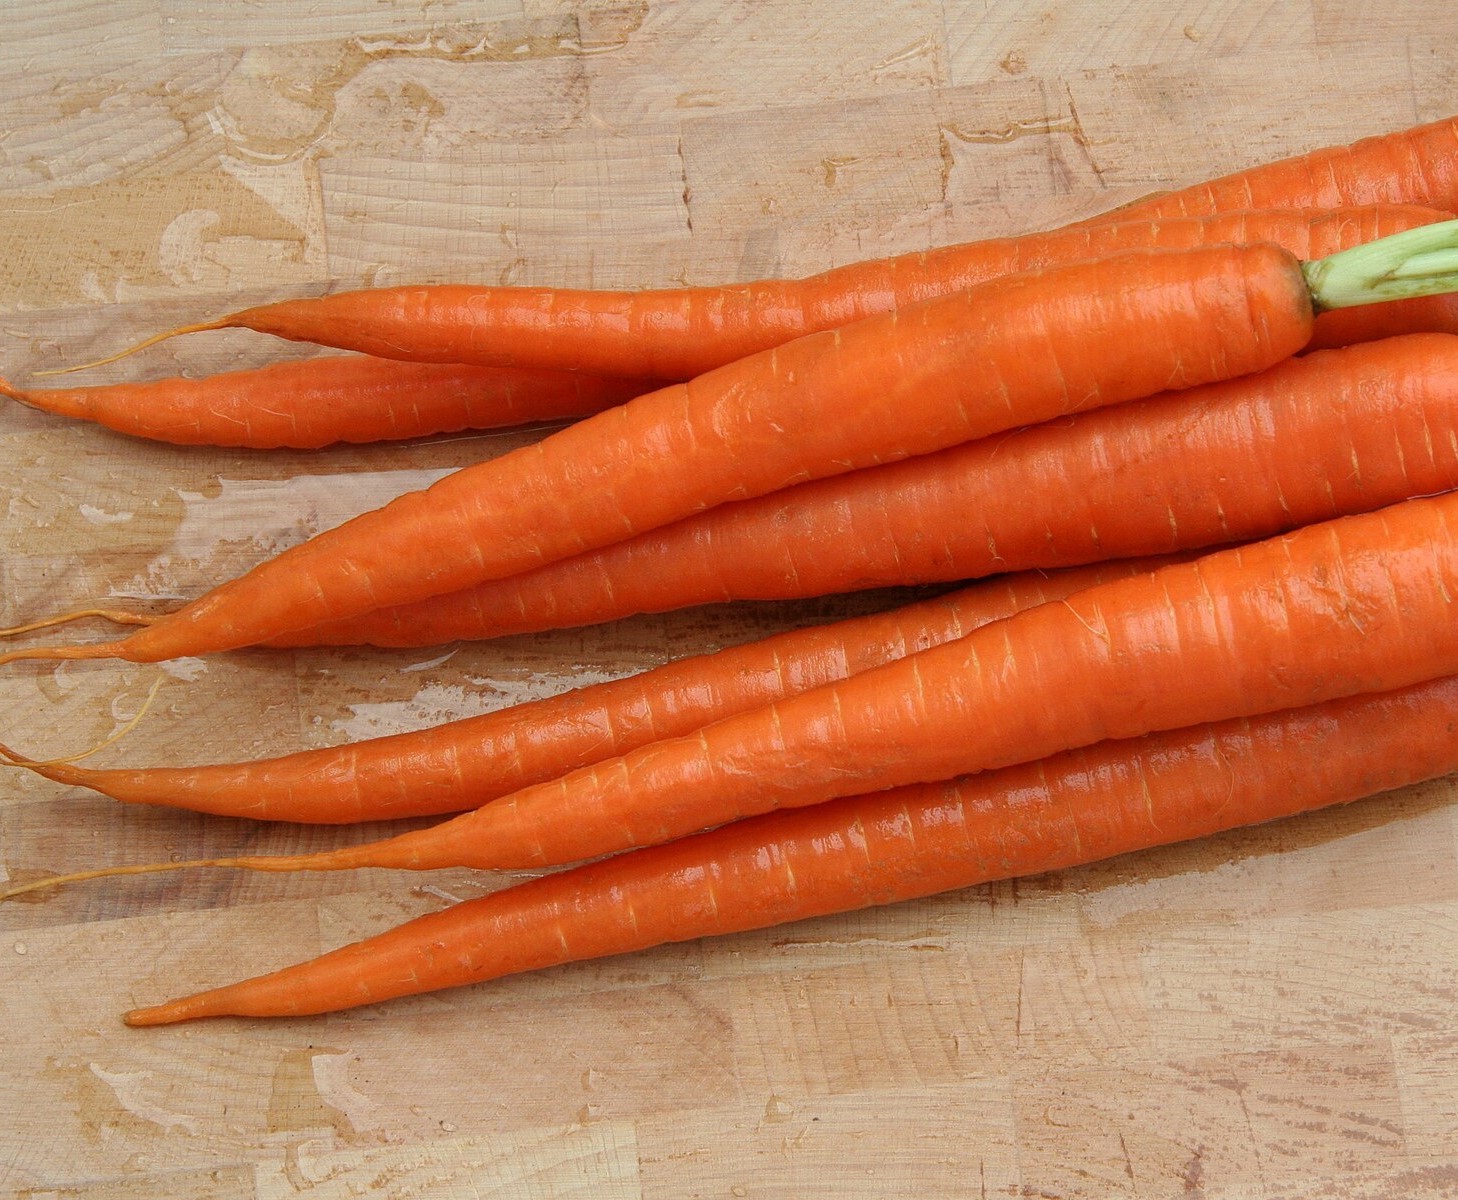 Гинеколог Варламова сообщает, что морковь, бобовые и орехи могут улучшить настроение во время менопаузы